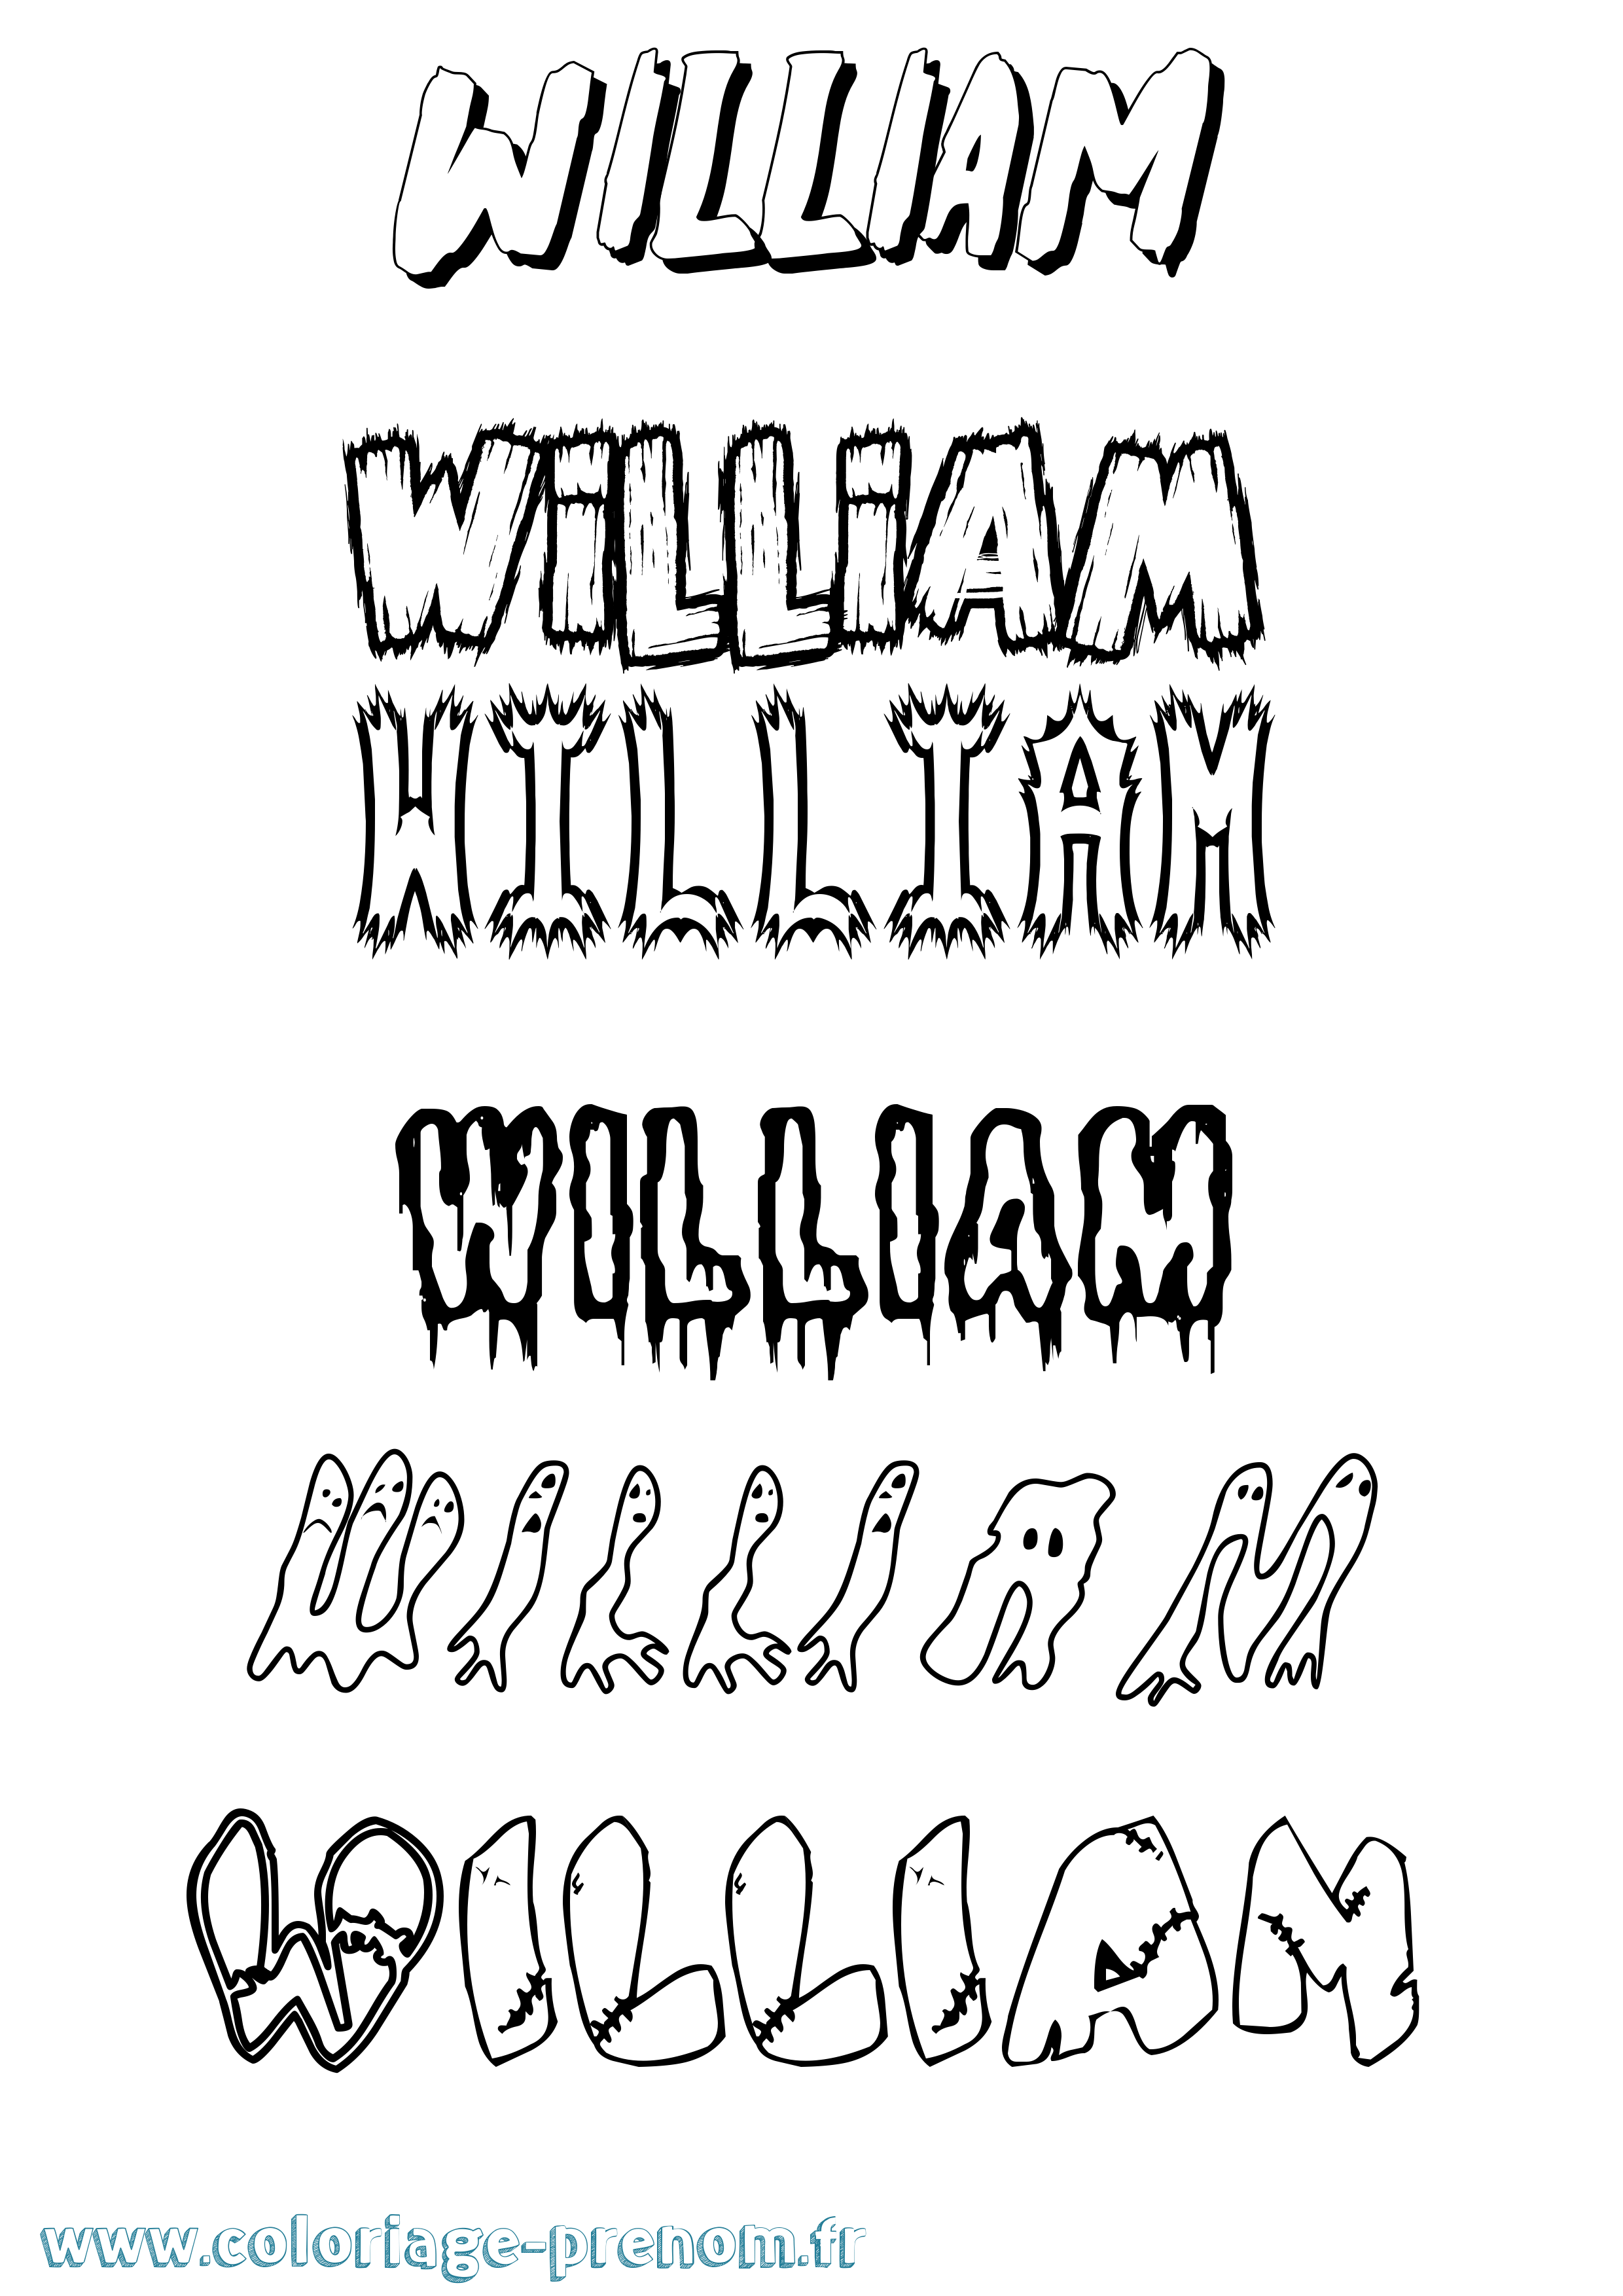 Coloriage prénom William Frisson